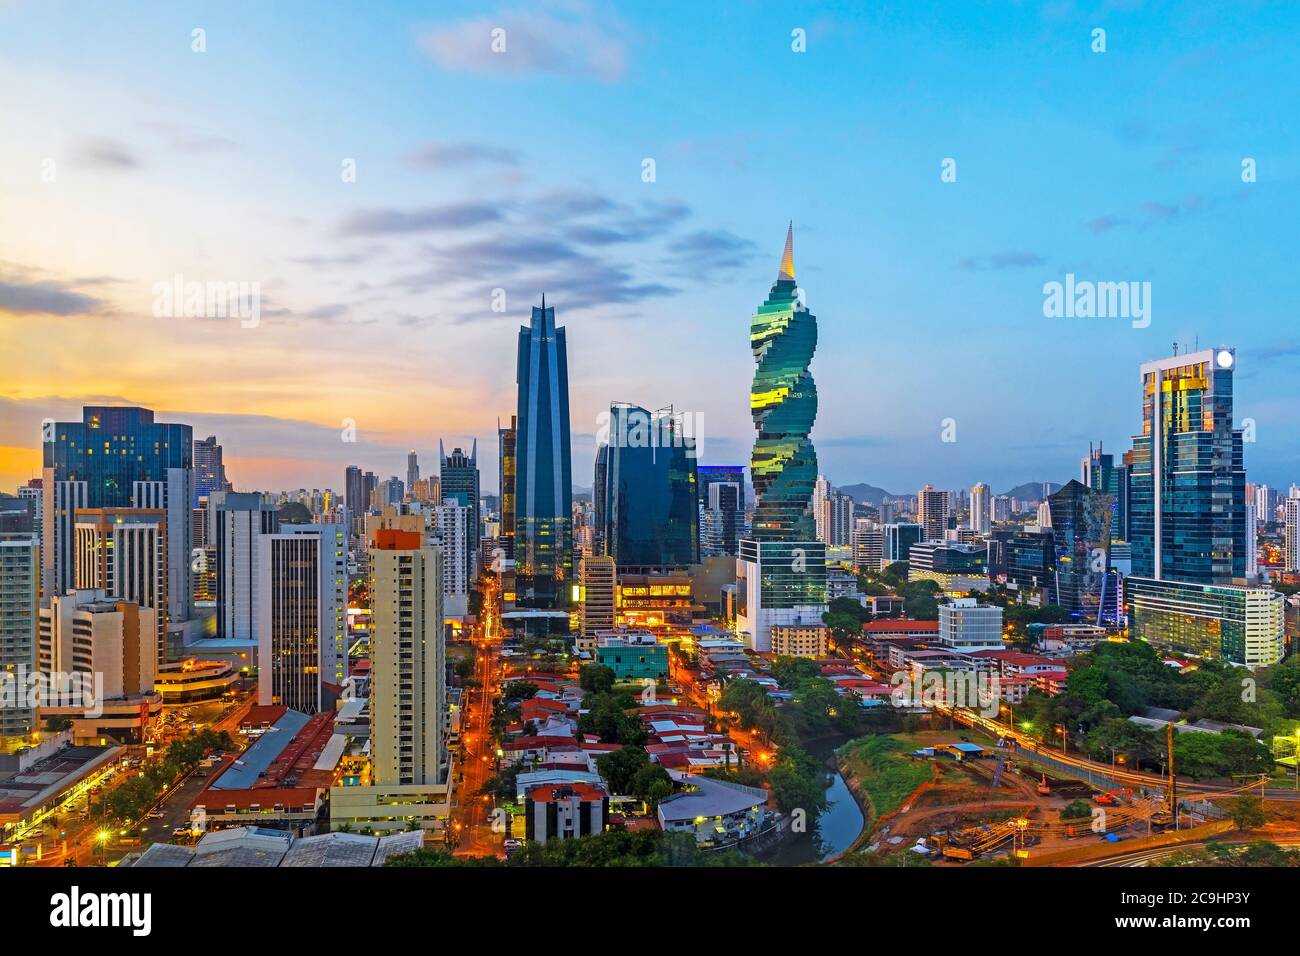 Lo skyline di Panama City con i suoi grattacieli nel quartiere finanziario al tramonto, Panama. Foto Stock